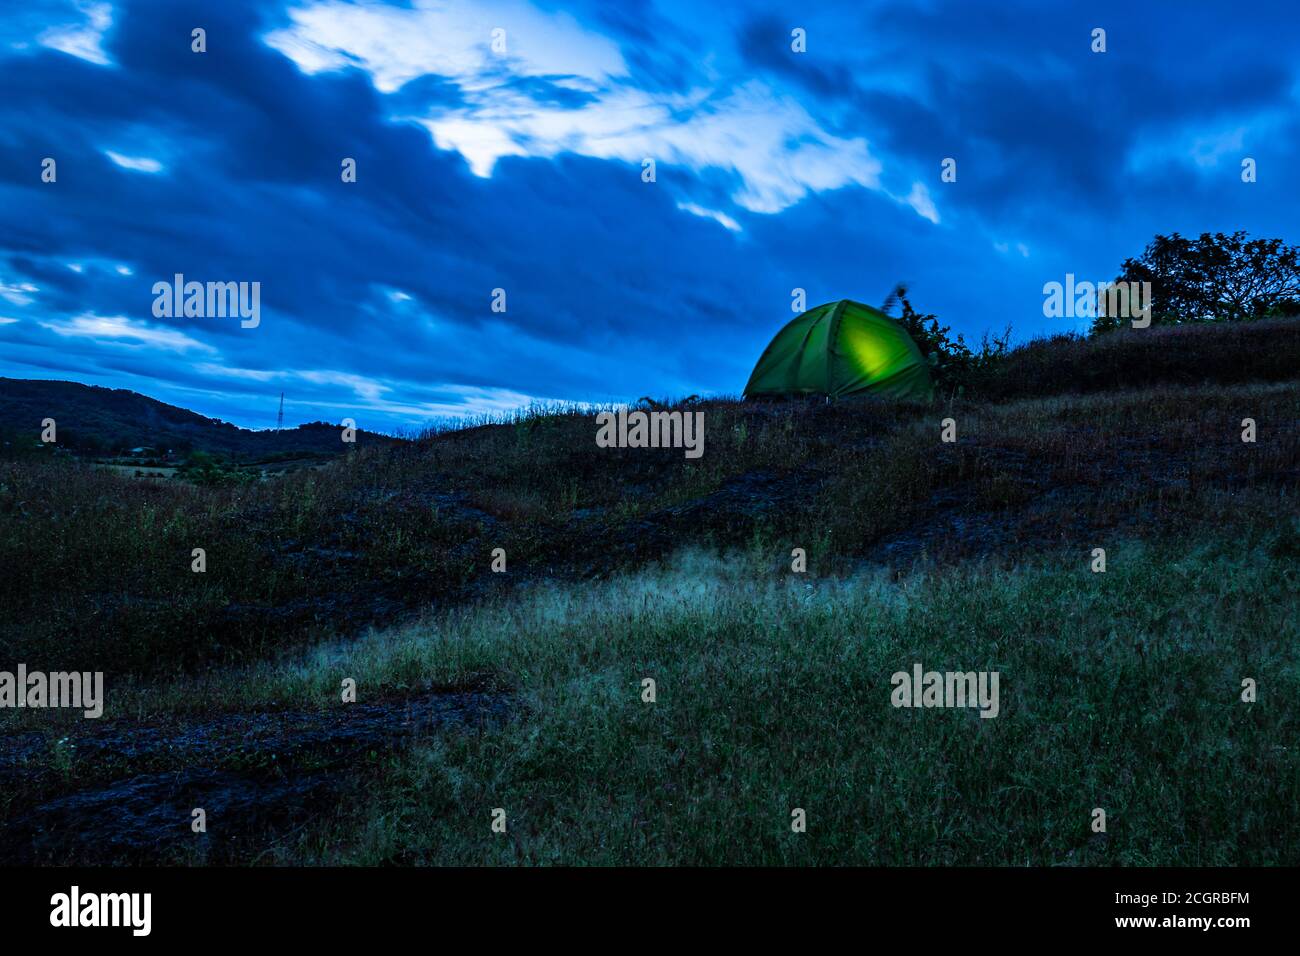 Camping solo auf der Bergspitze mit herrlichem Blick und dramatischen Himmel am Abend Bild wird auf gokarna karnataka indien aufgenommen. Stockfoto